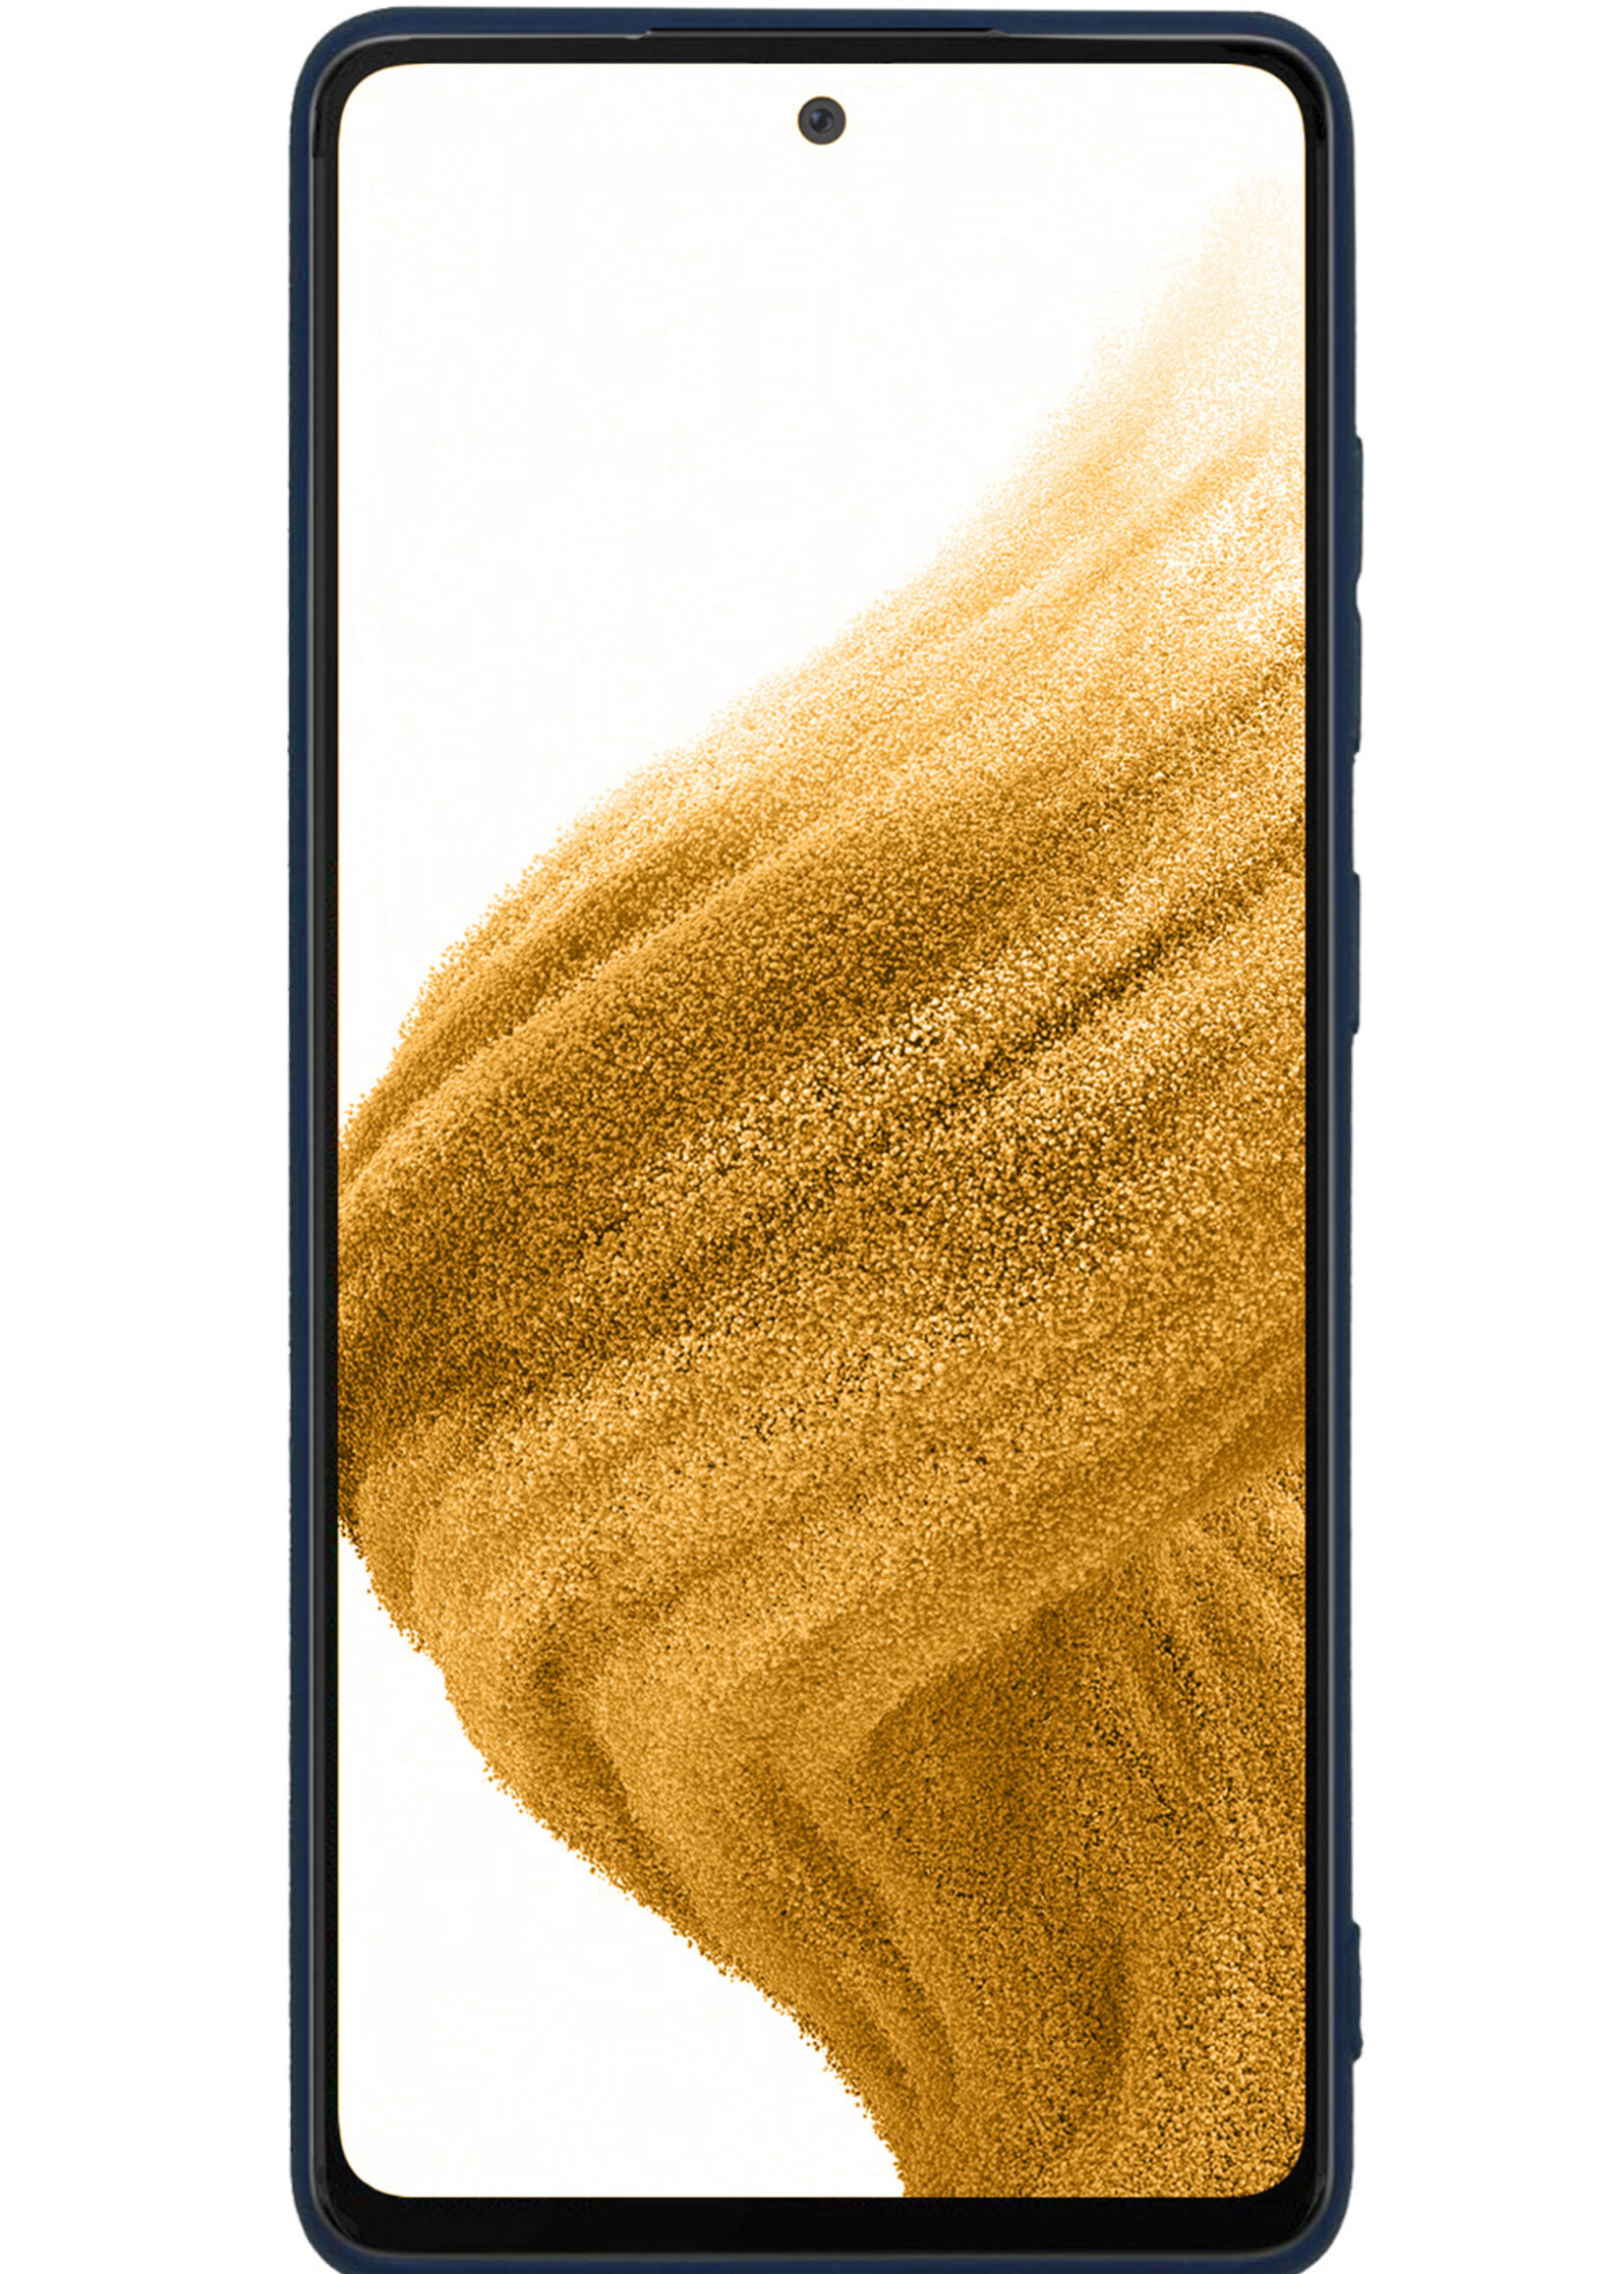 LUQ Hoesje Geschikt voor Samsung A53 Hoesje Siliconen Case - Hoes Geschikt voor Samsung Galaxy A53 Hoes Siliconen - Donkerblauw - 2 Stuks